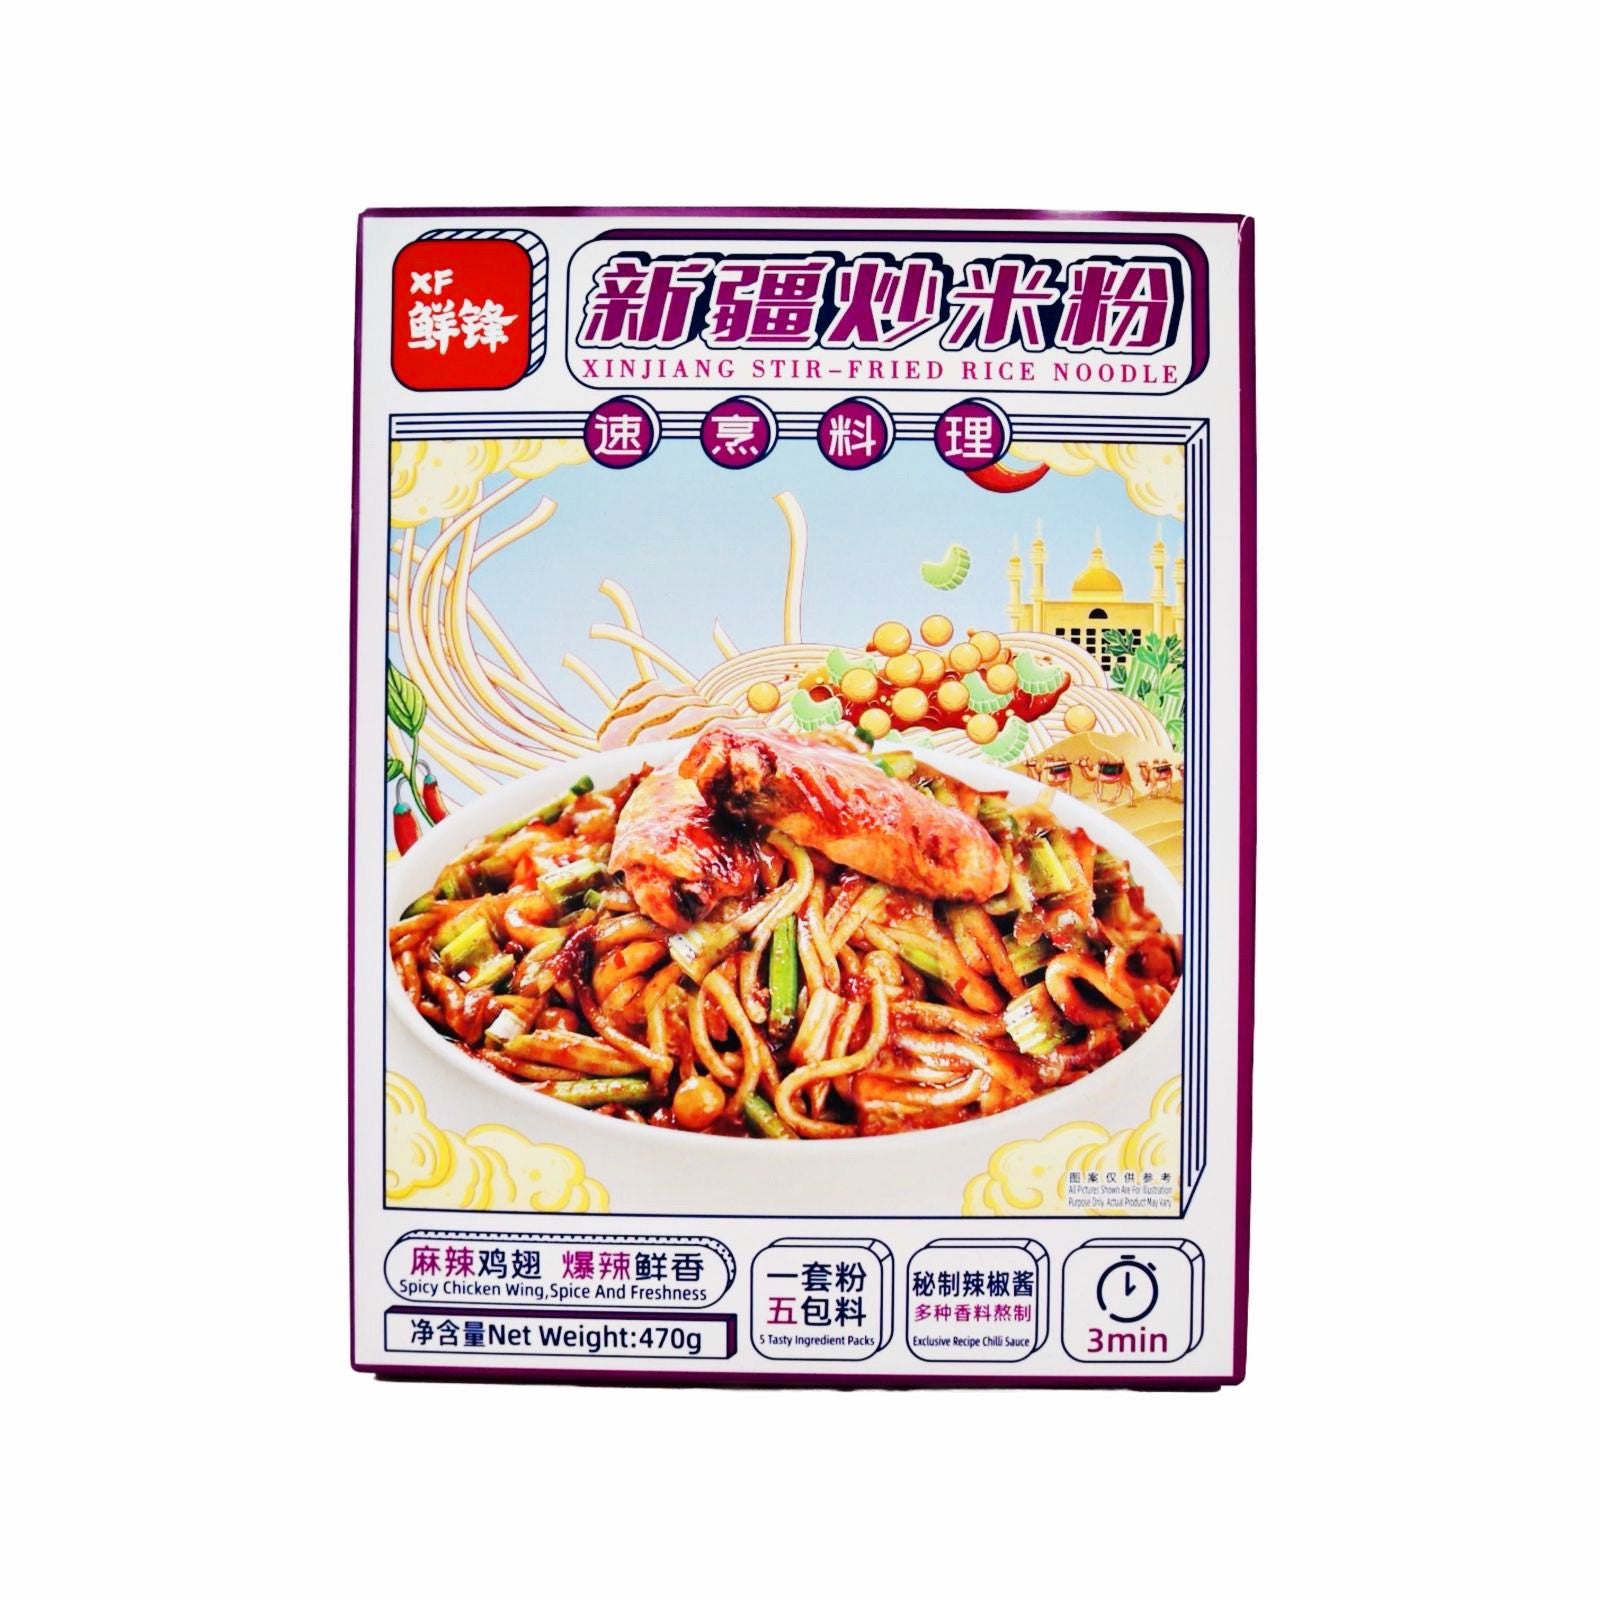 XF Xinjiang Stir-Fried Rice Noodle 470g